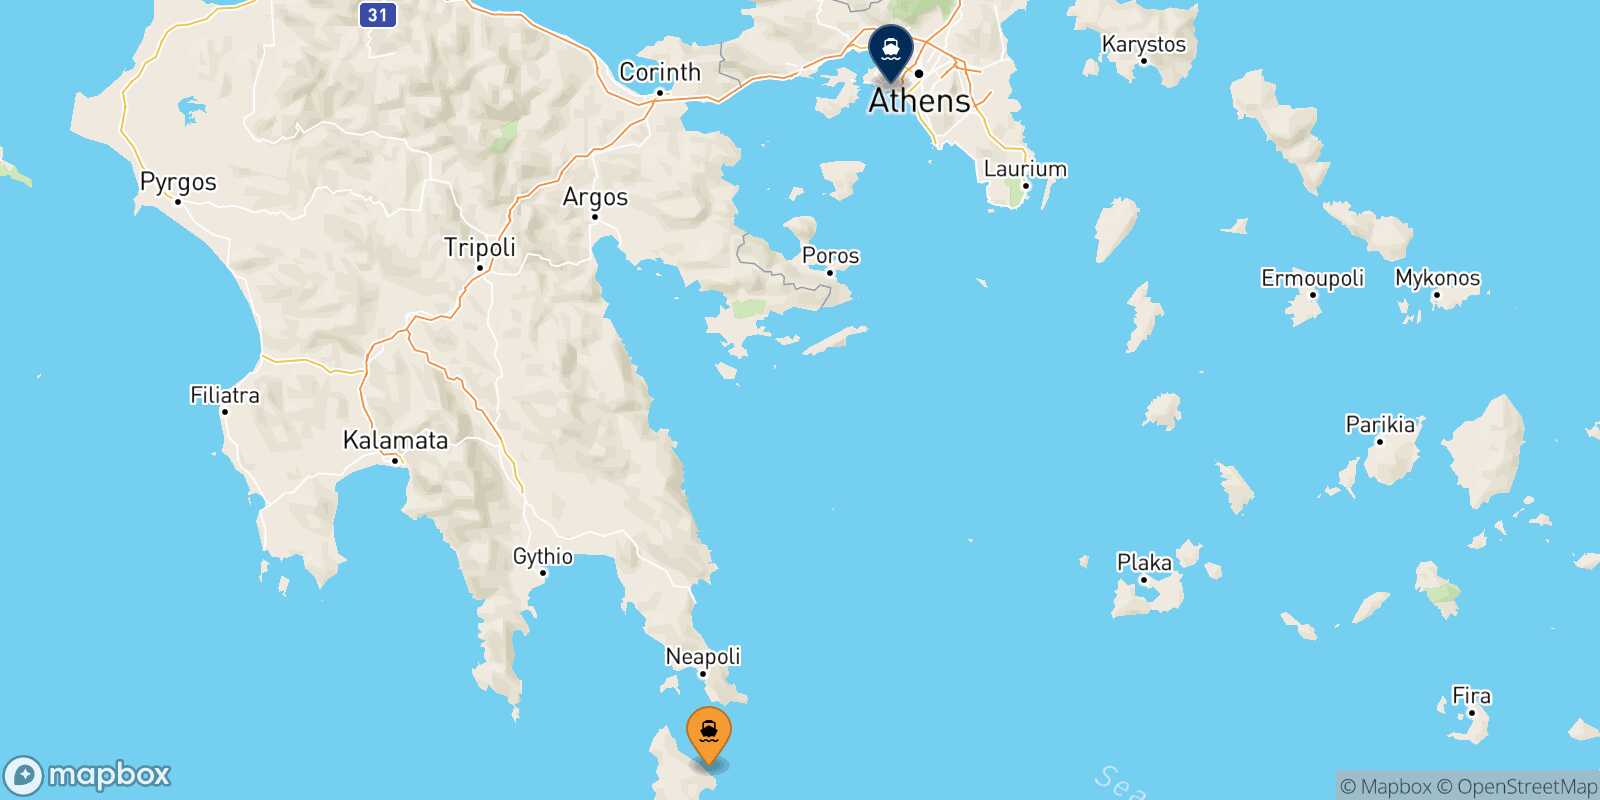 Kythira Piraeus route map